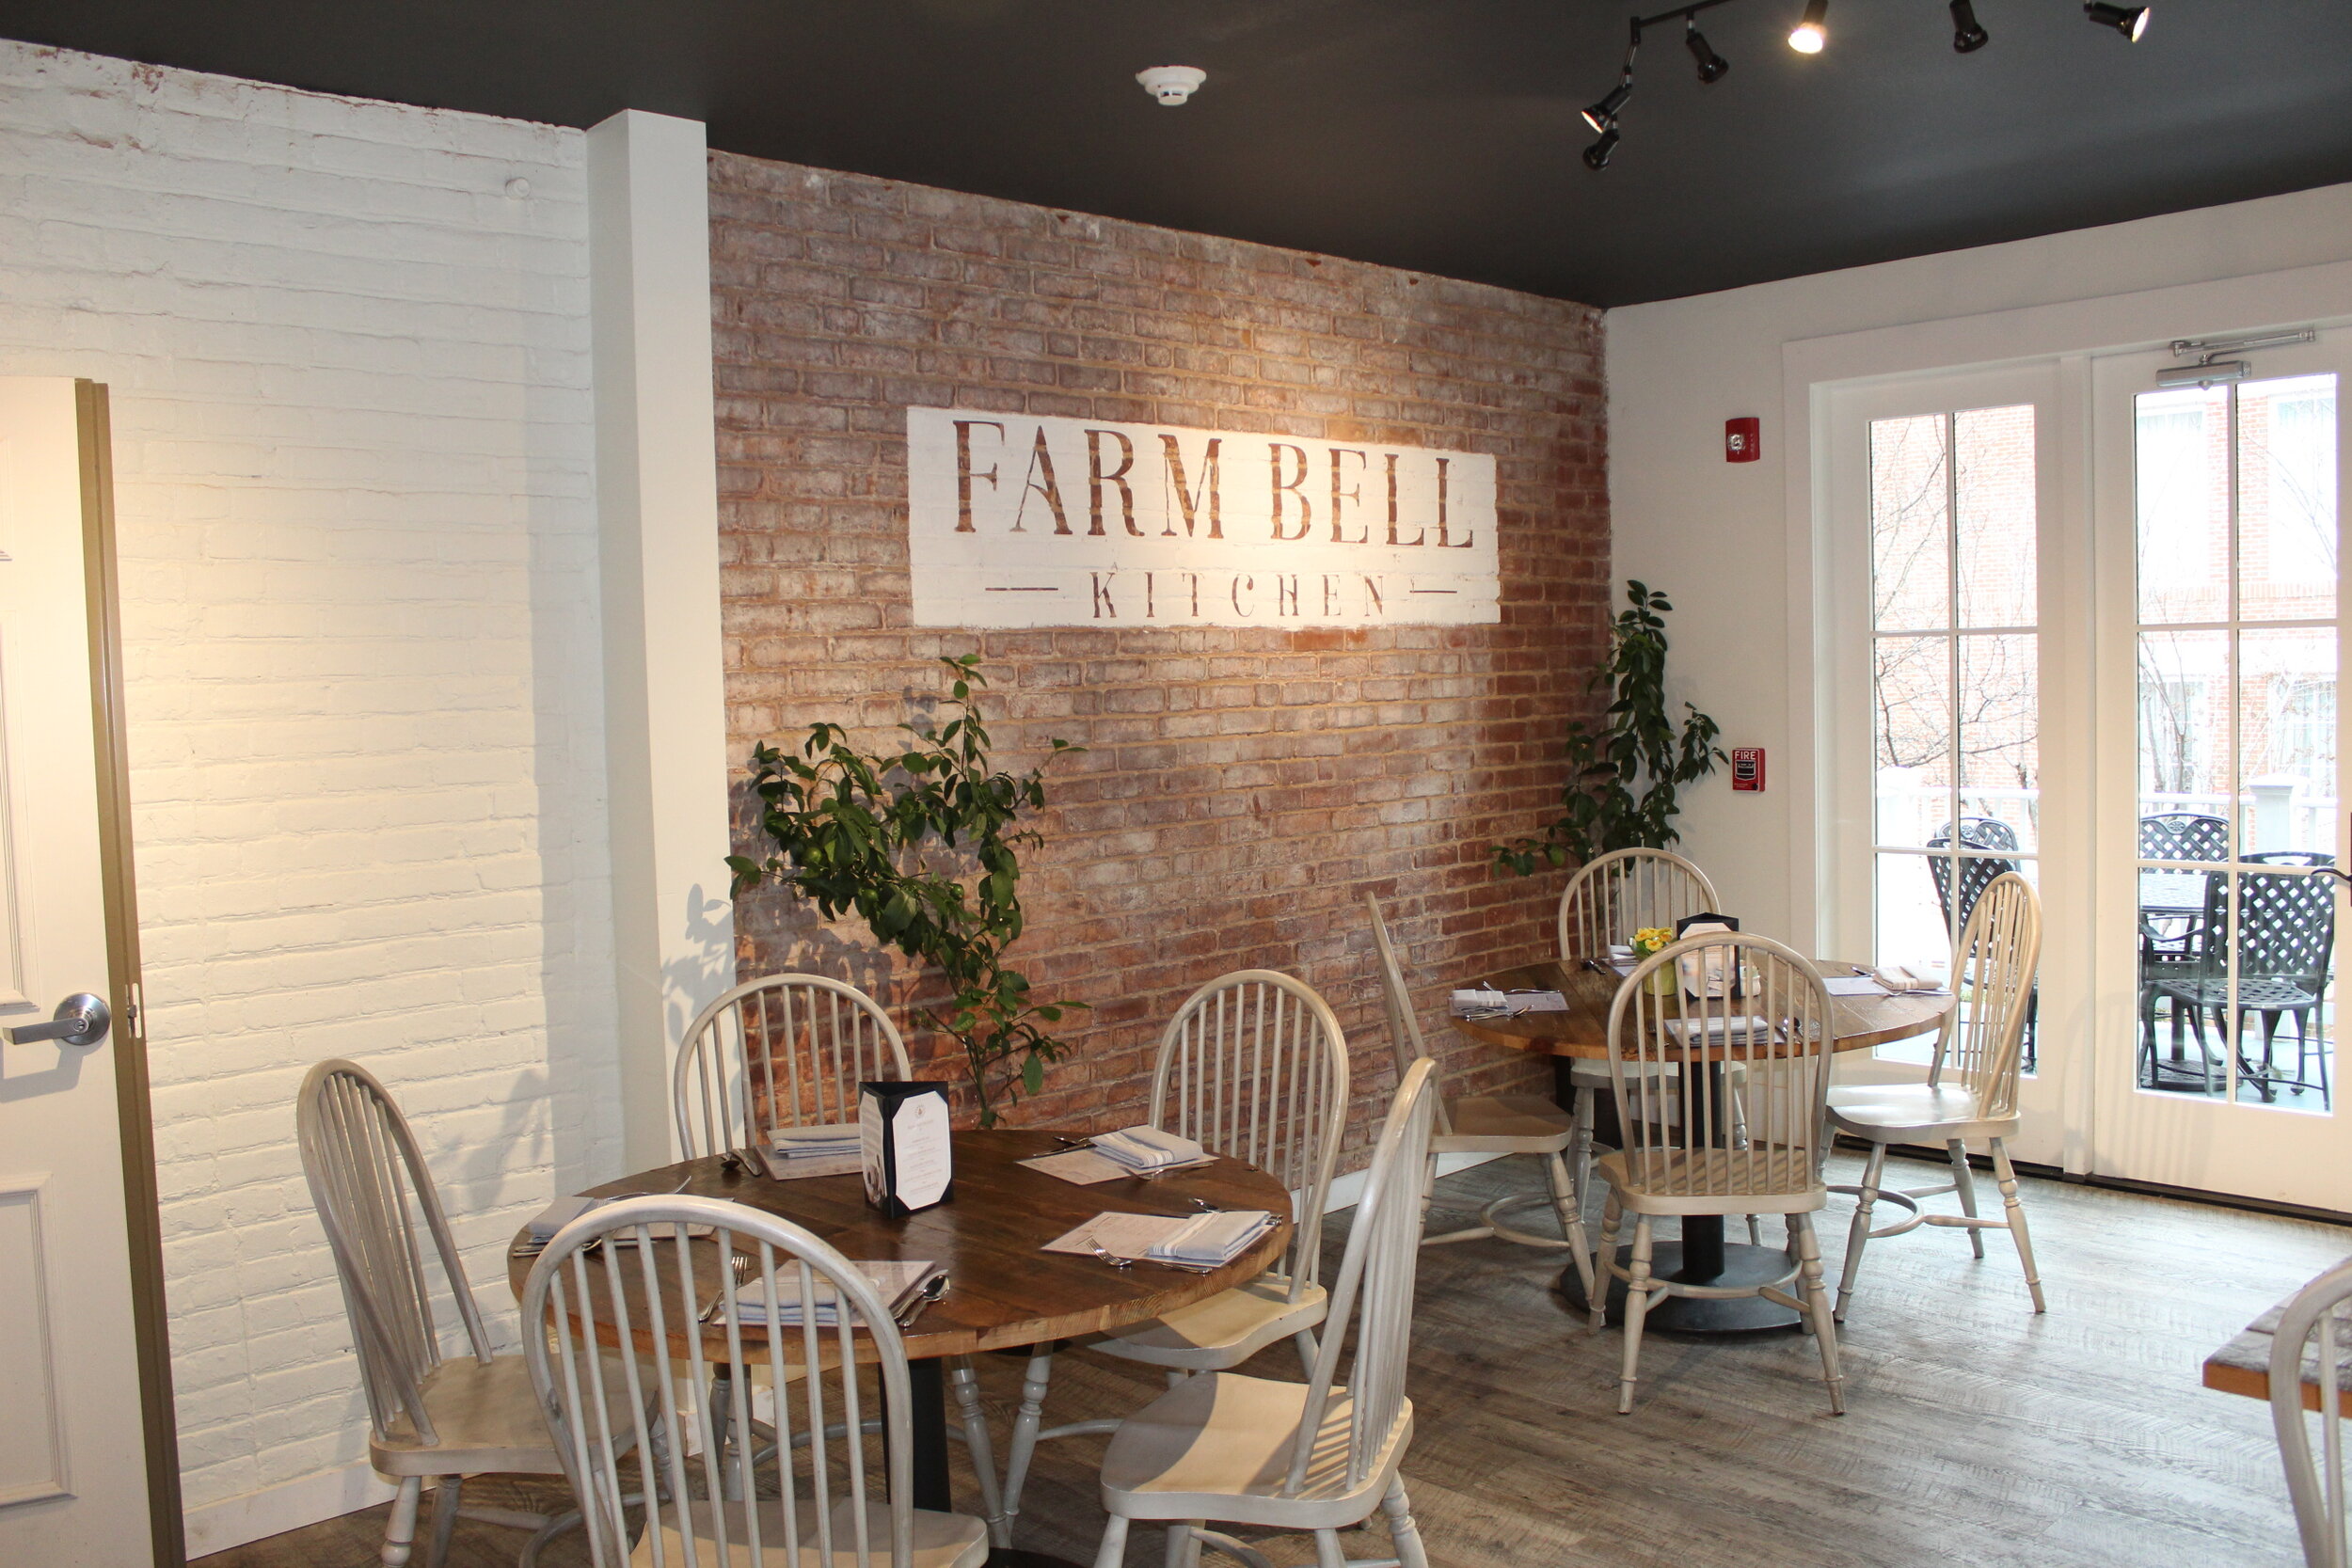 Farm Bell Kitchen - Charlottesville, Virginia